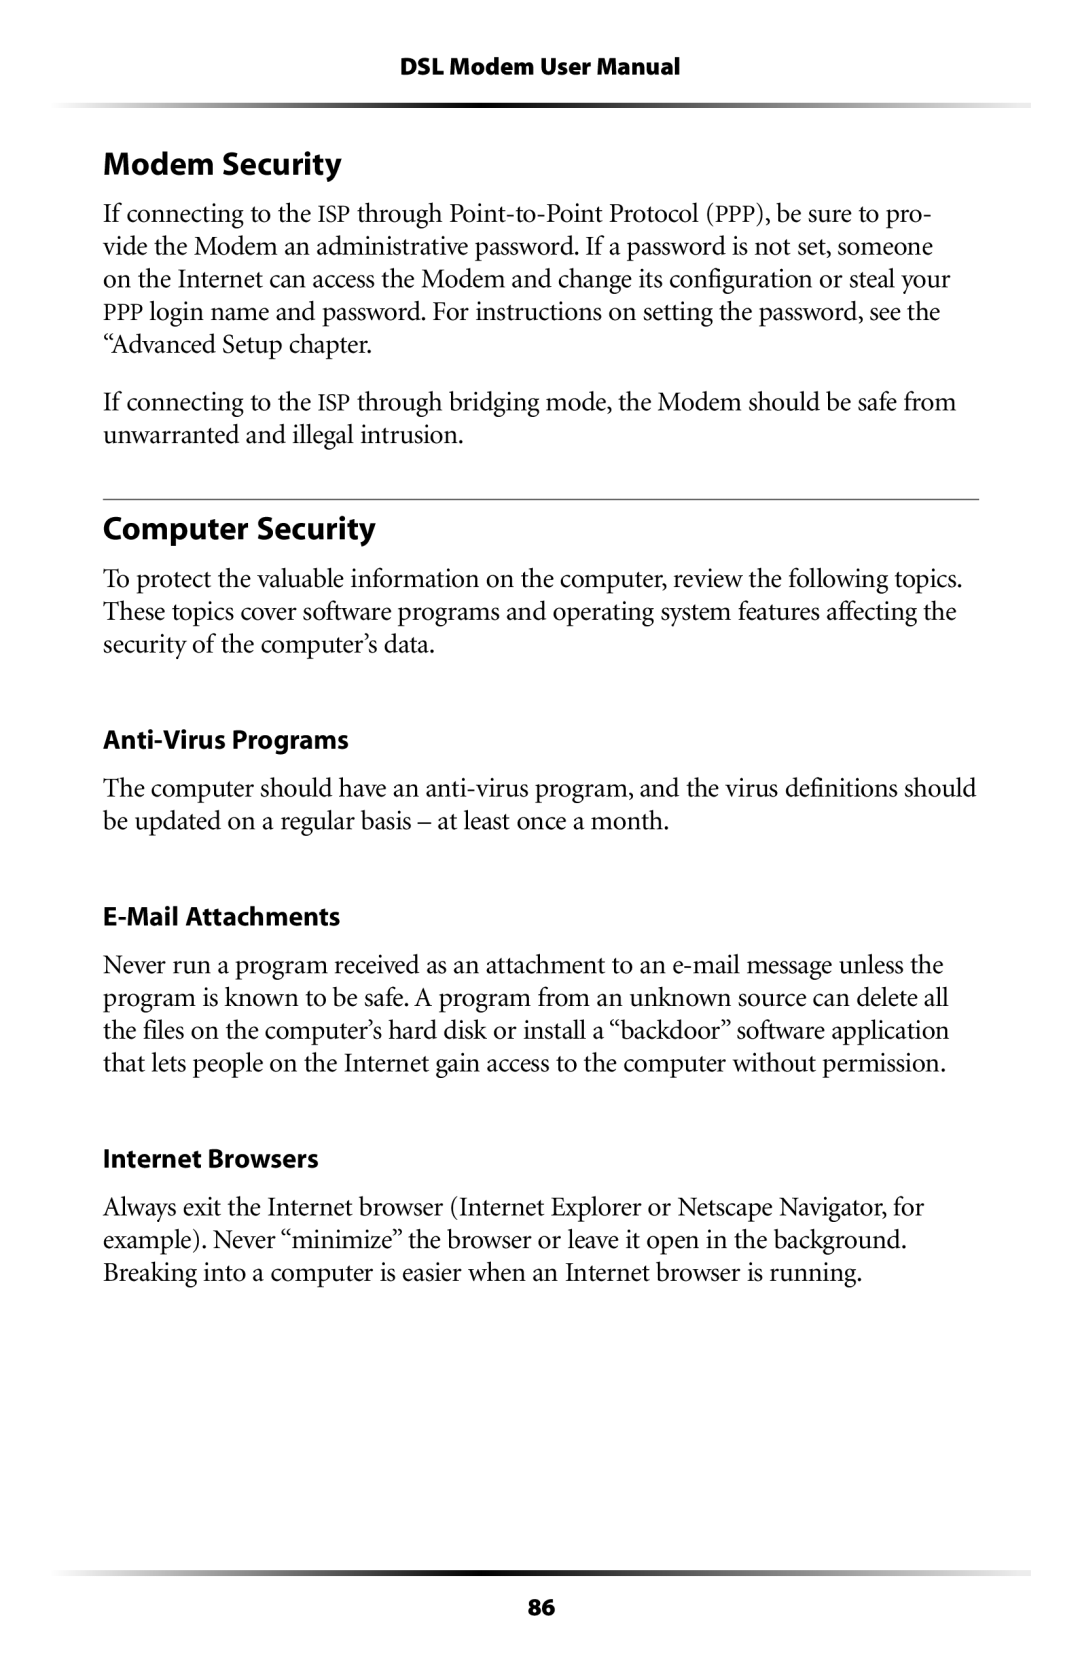 Verizon GT701C user manual Modem Security, Computer Security 